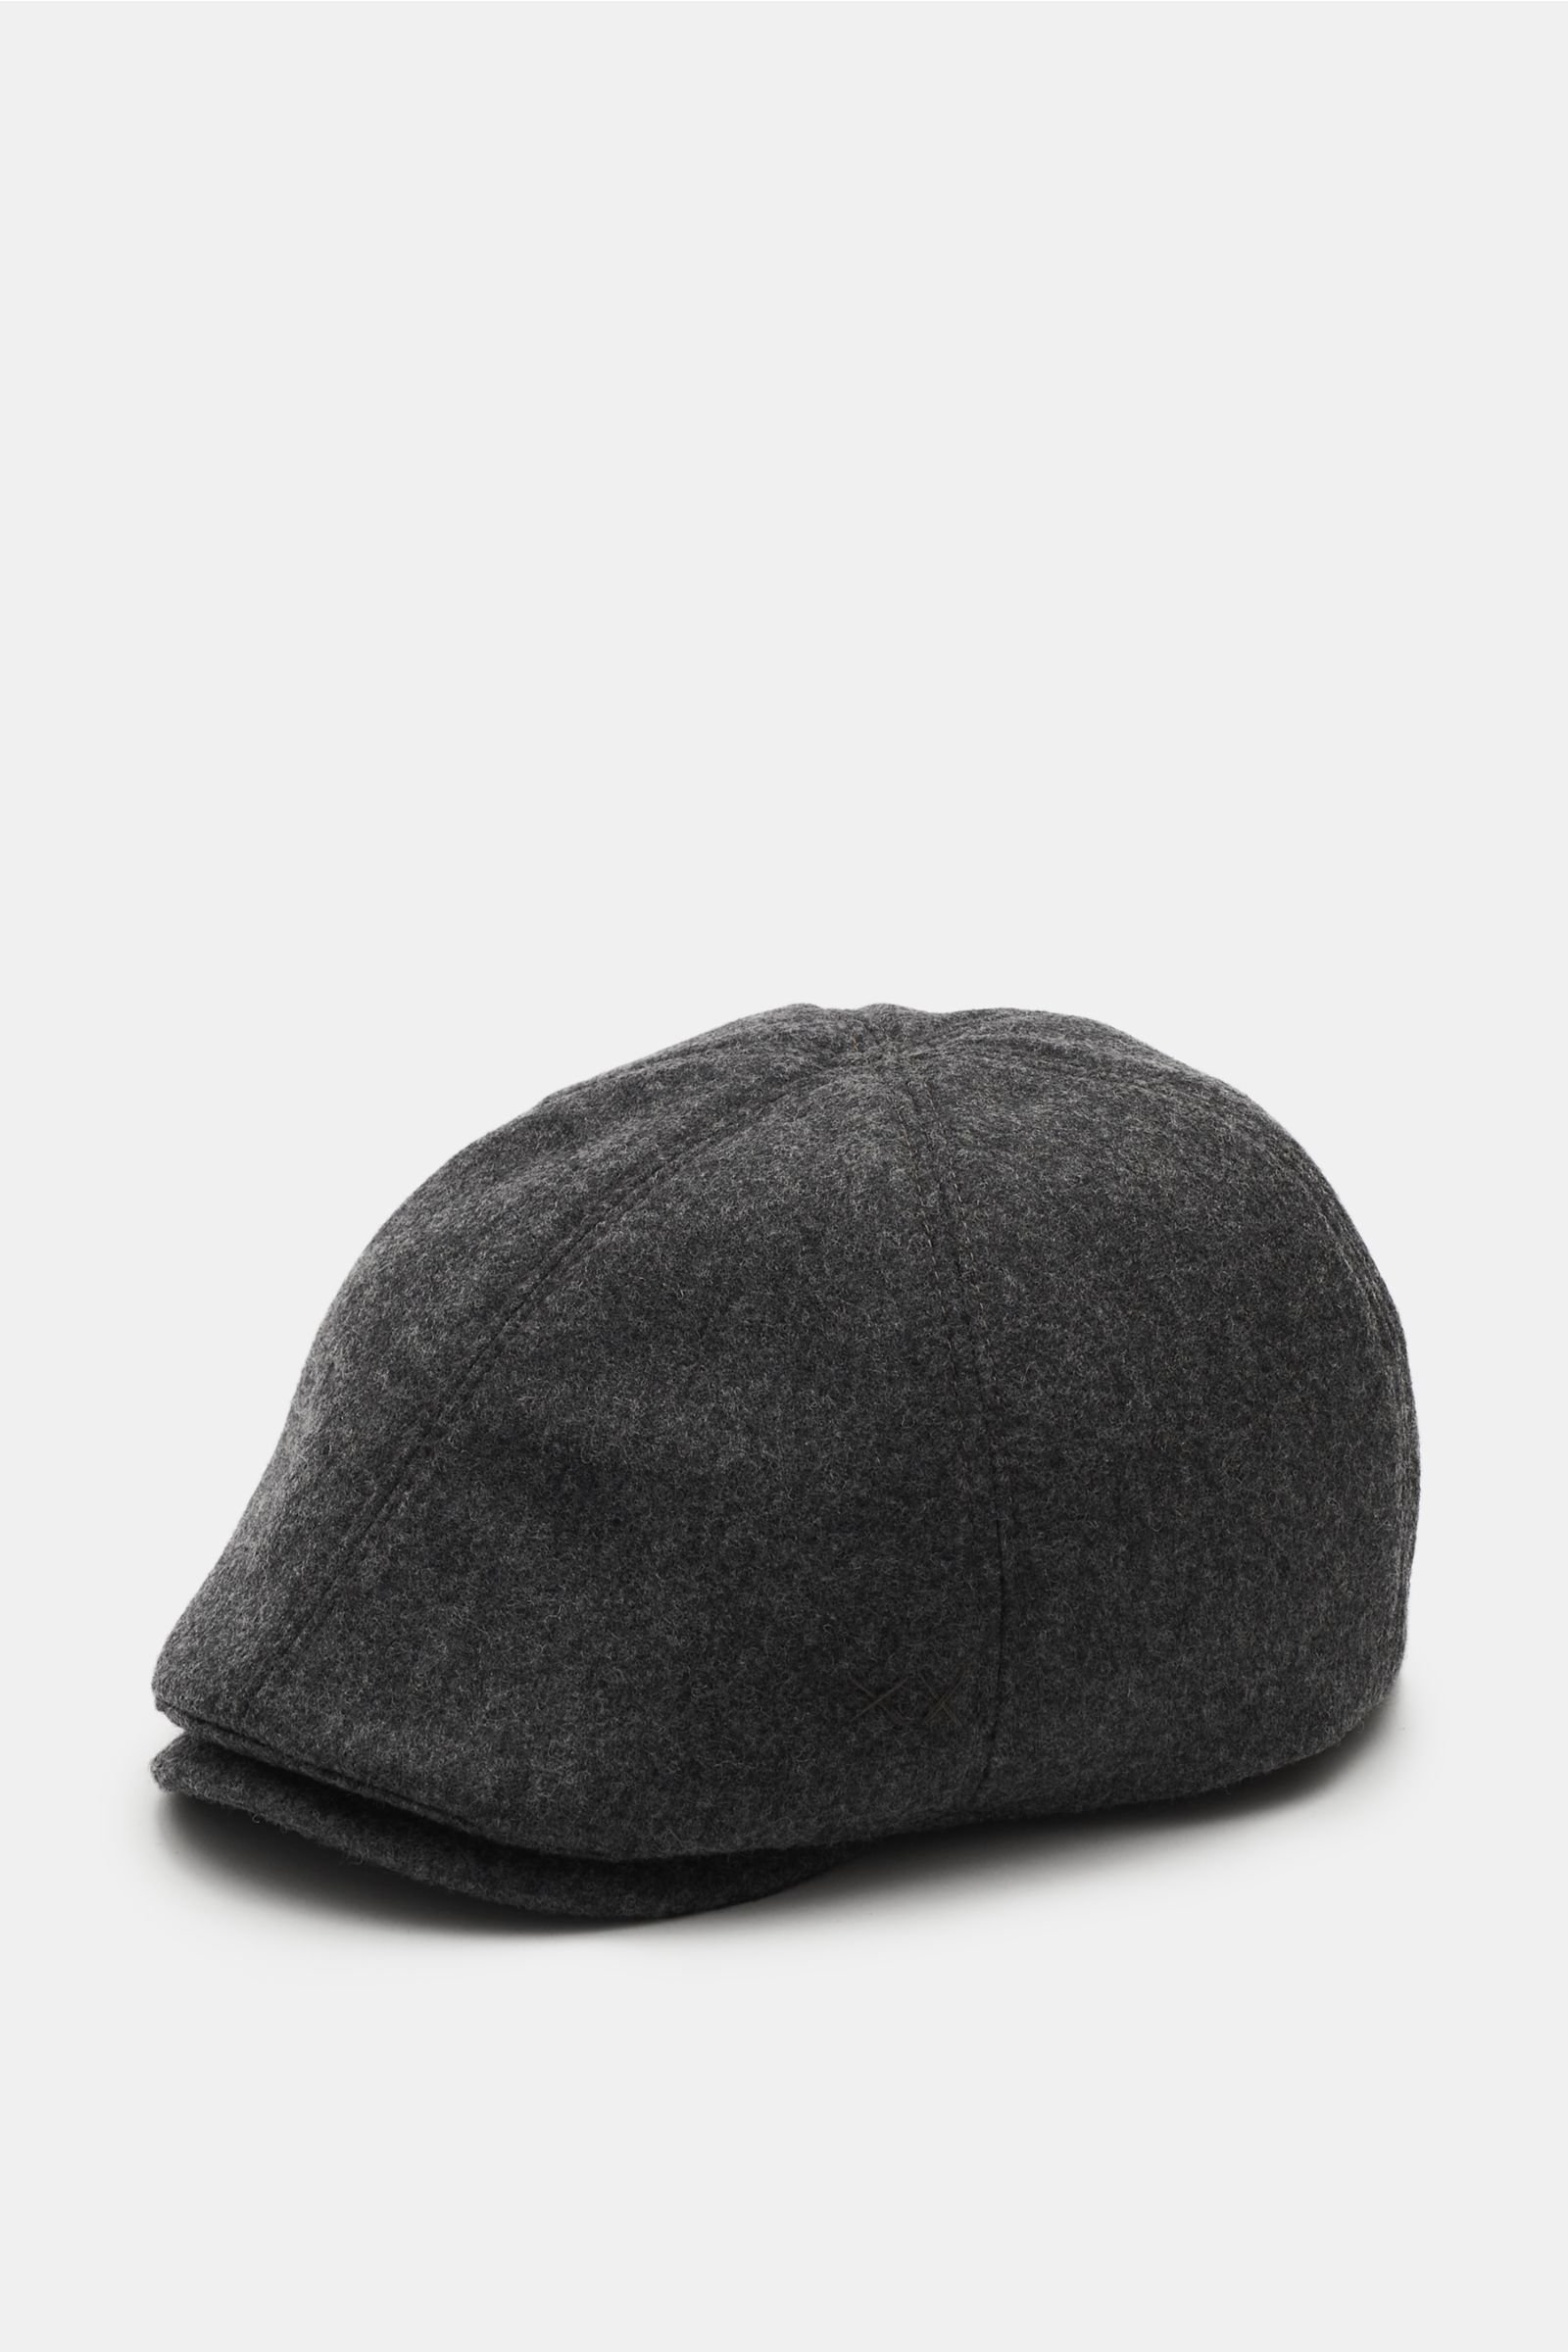 Flat cap dark grey